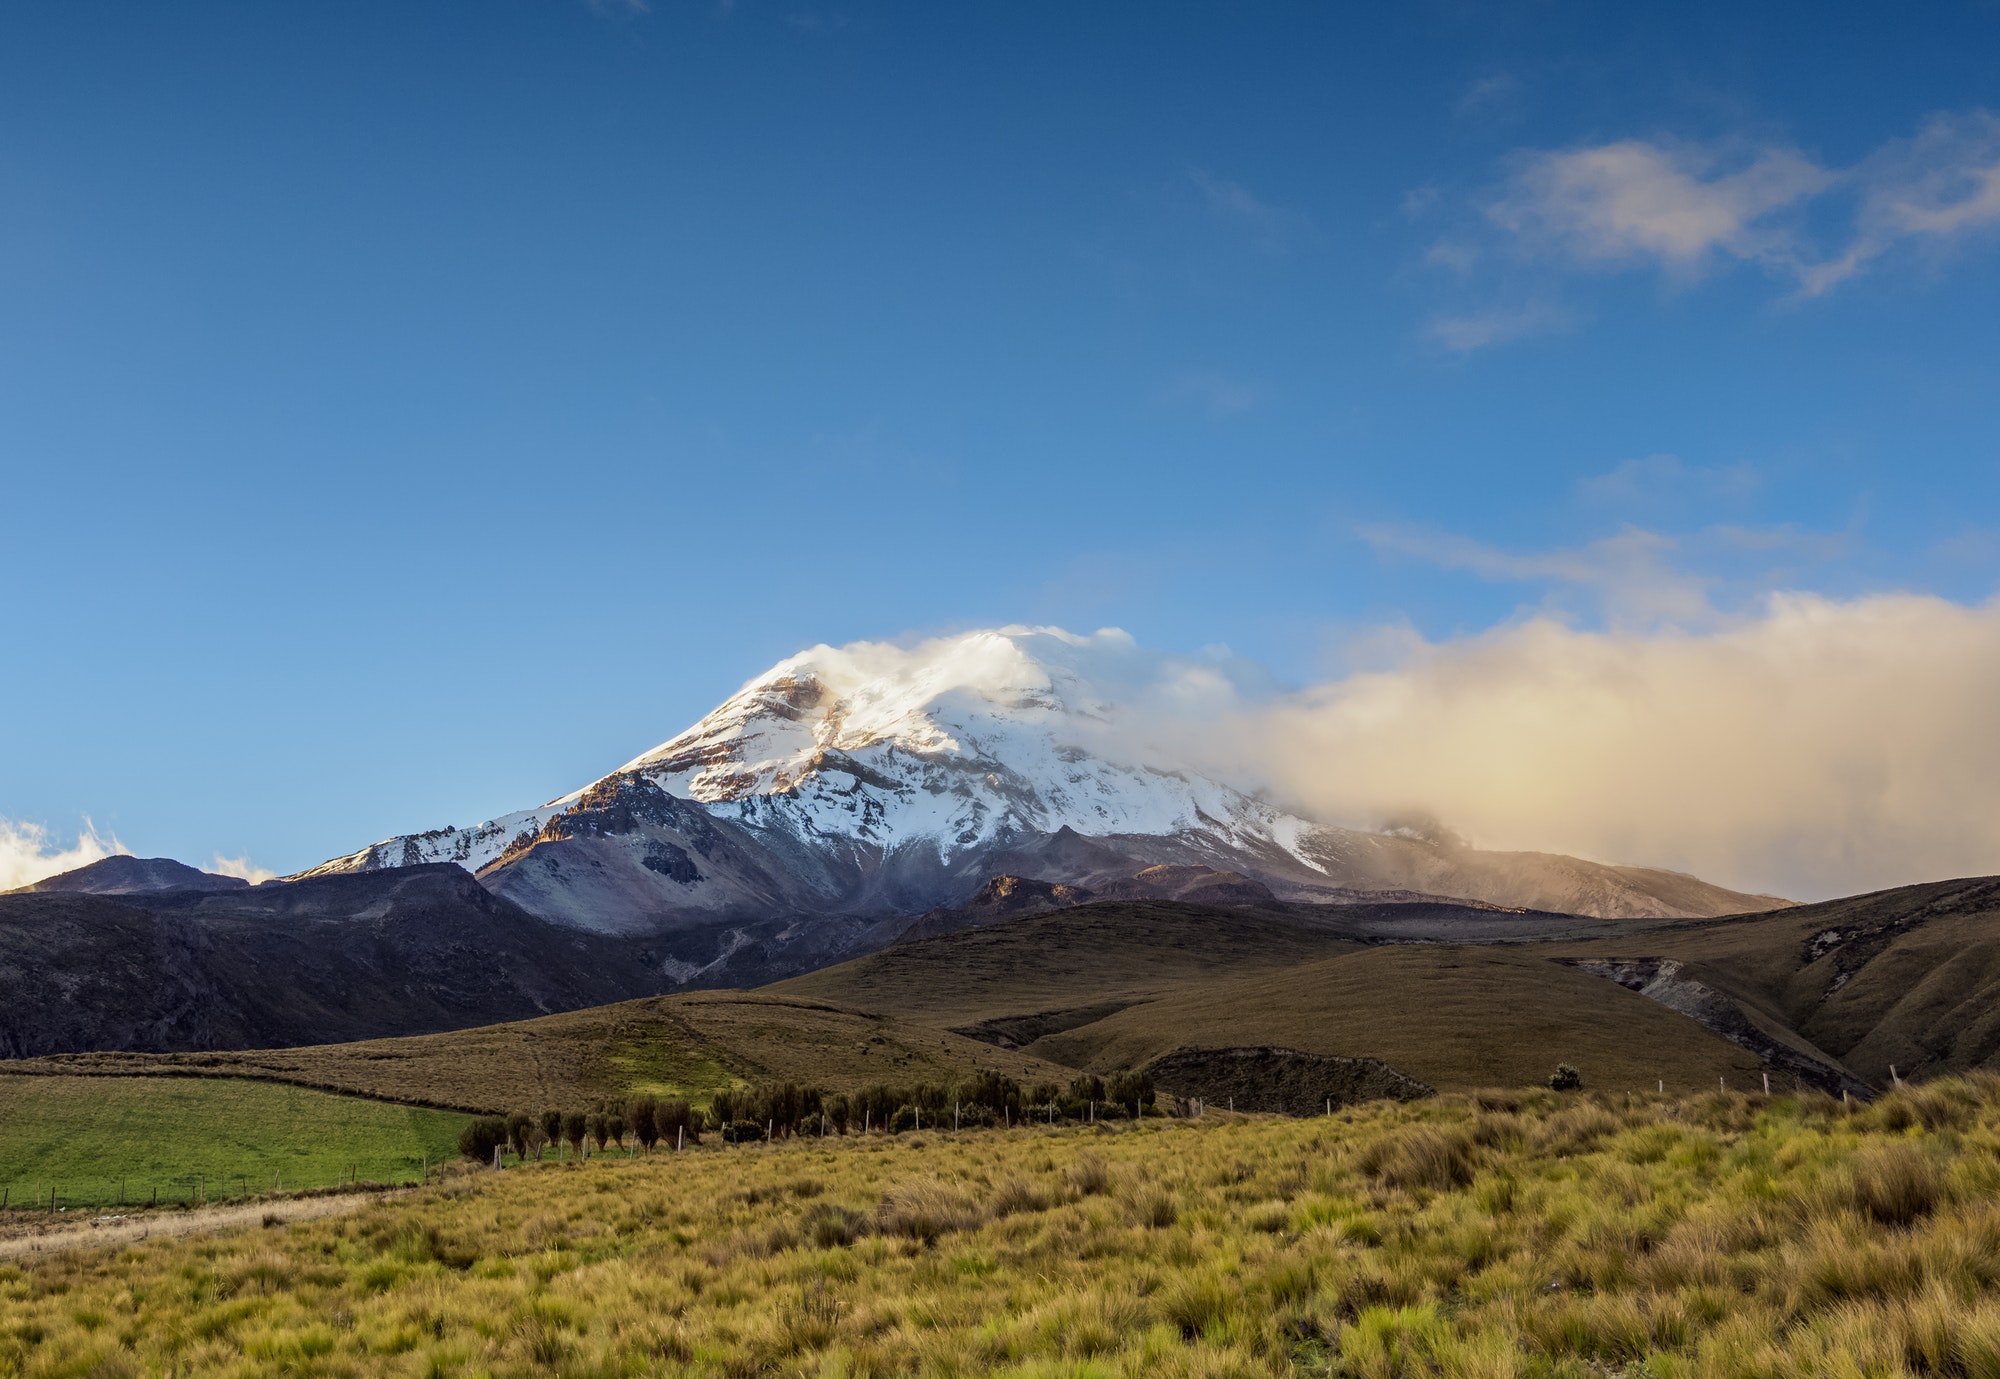 Chimborazo Volcano in Ecuador